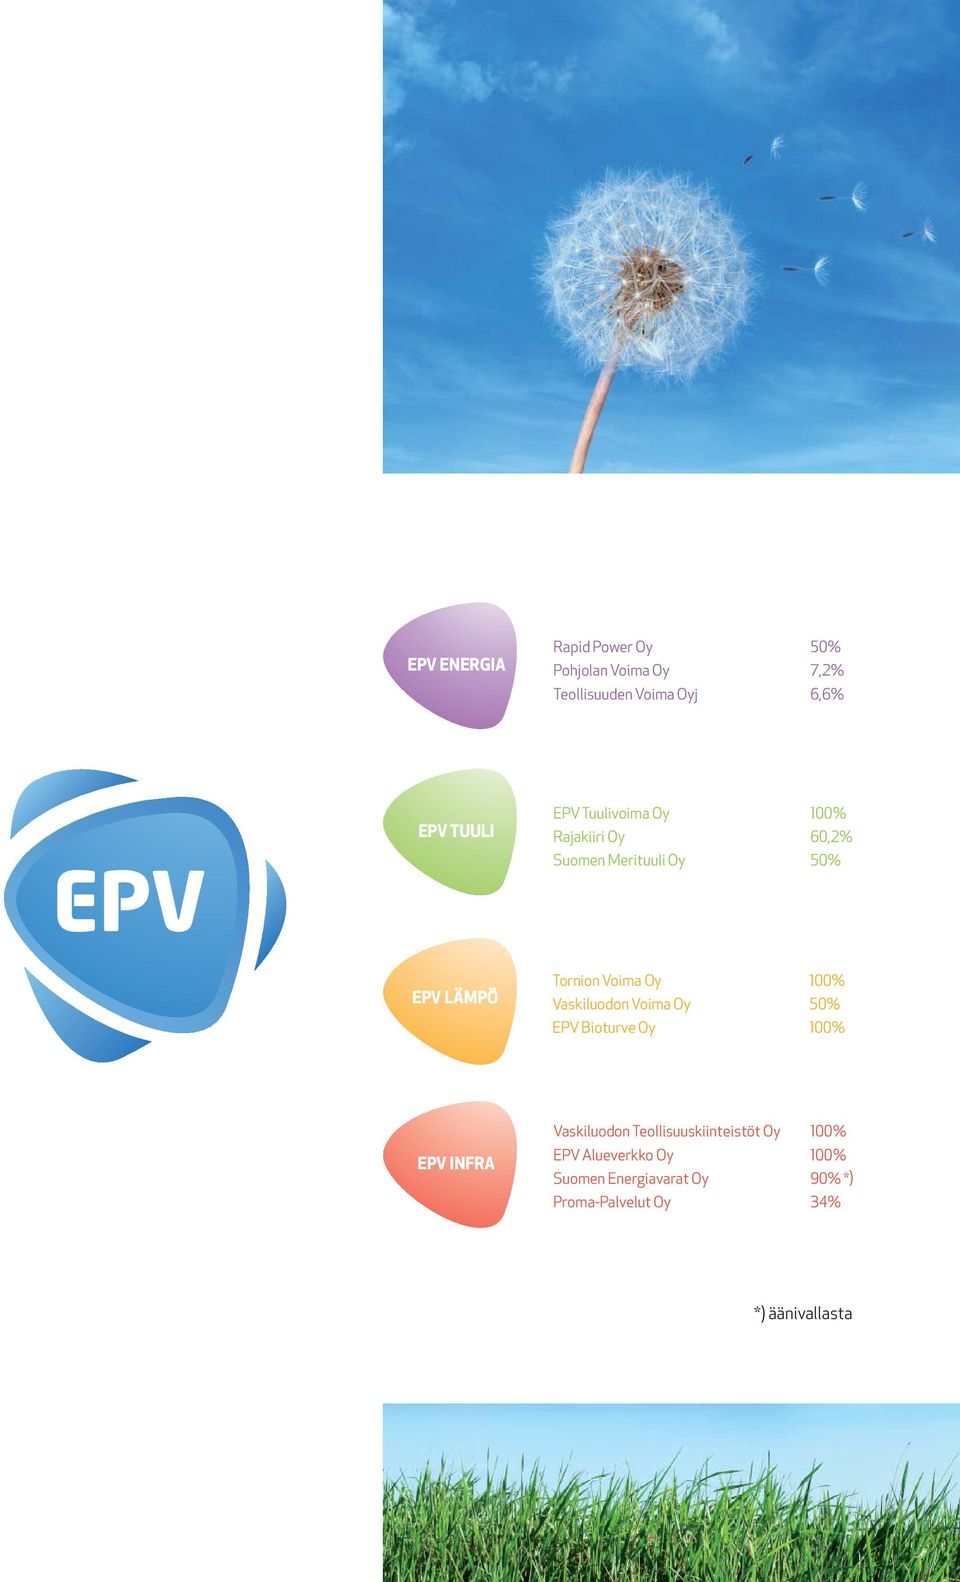 Vaskiluodon Voima Oy EPV Bioturve Oy 100% 50% 100% EPV INFRA Vaskiluodon Teollisuuskiinteistöt